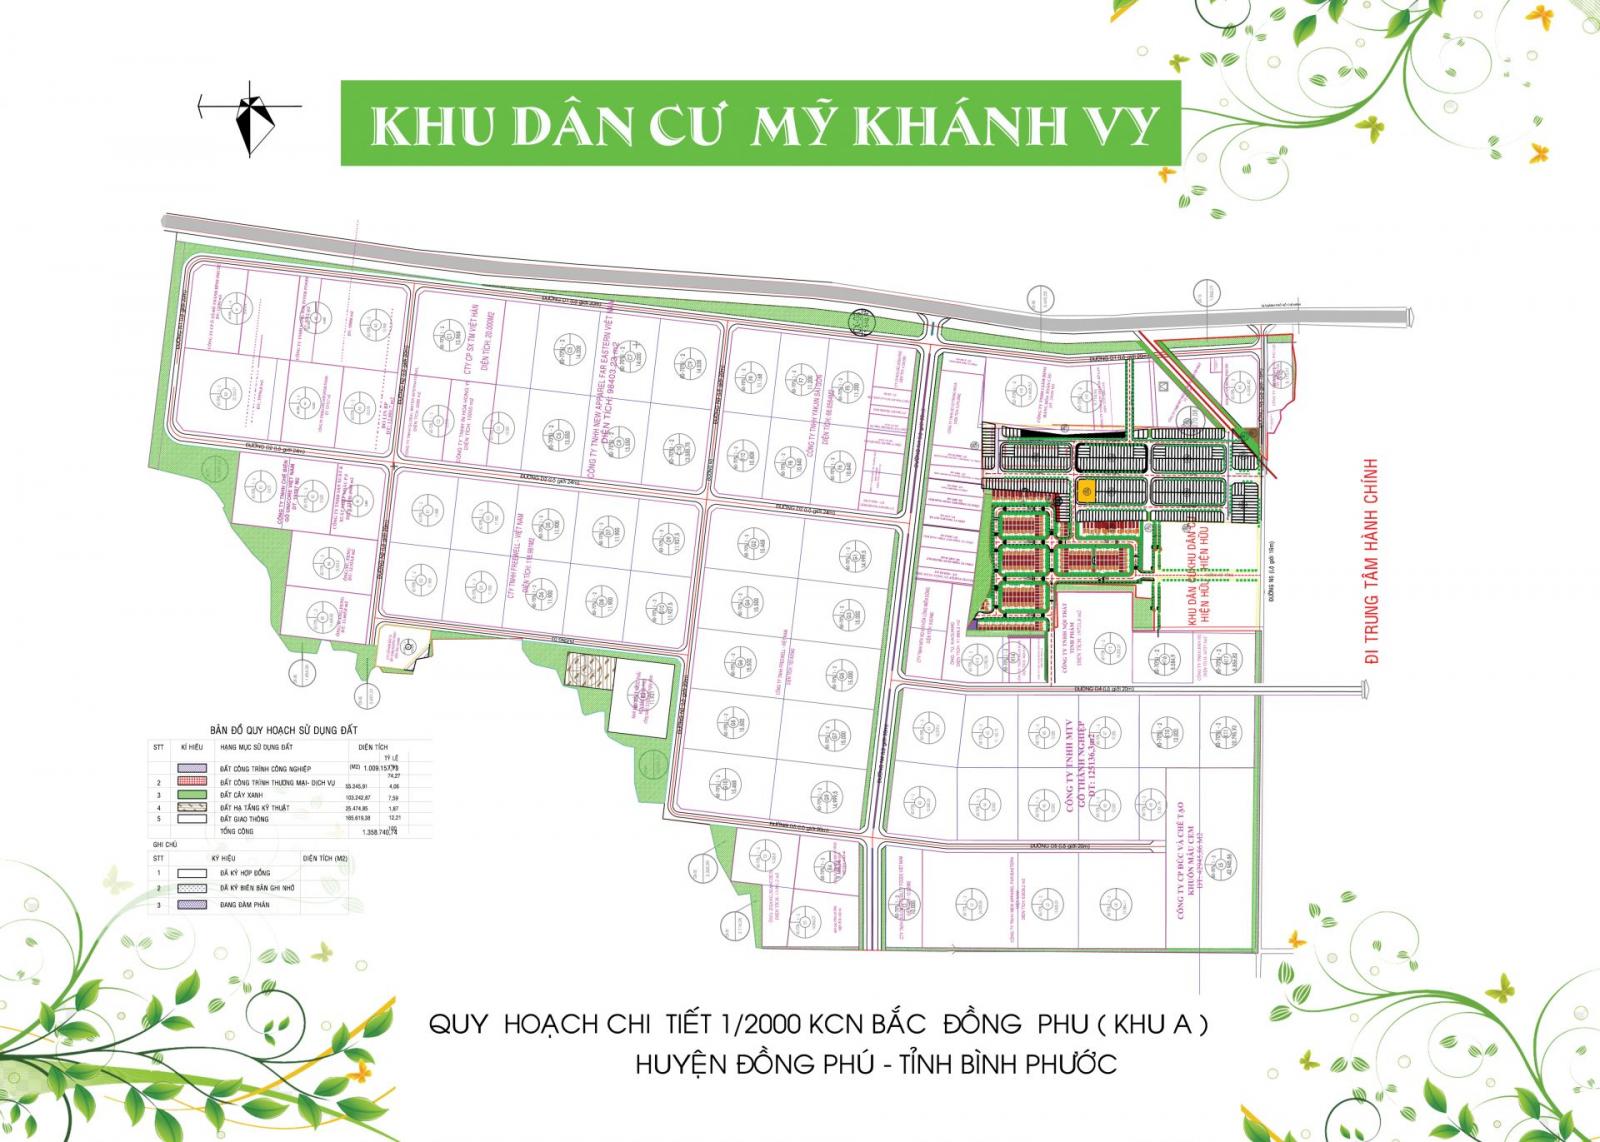 Bản đồ quy hoạch dự án Khu dân cư Mỹ Khánh Vy tại Bình Phước 